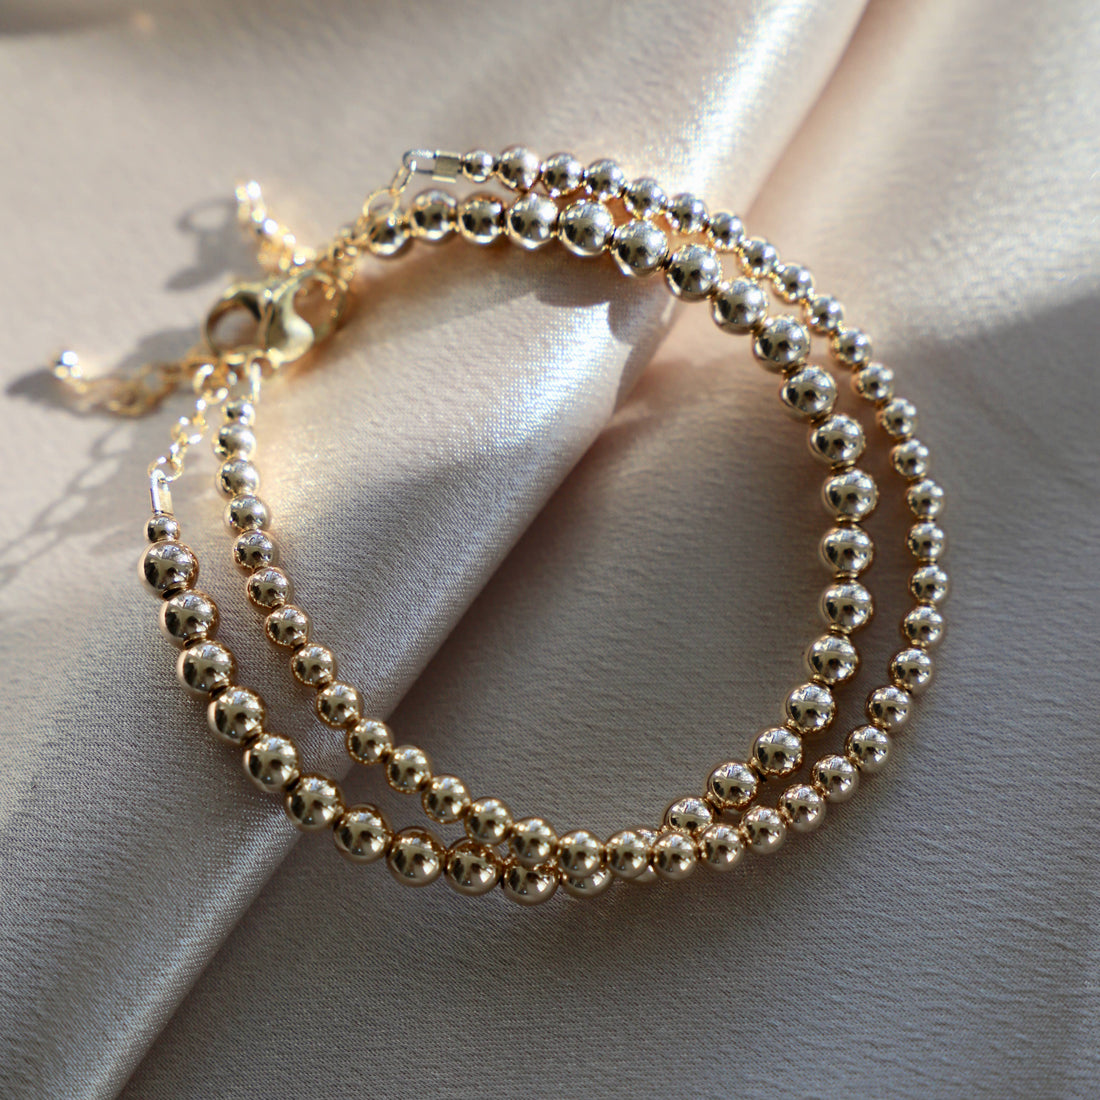 Gold Filled Beaded Bracelets: 5MM